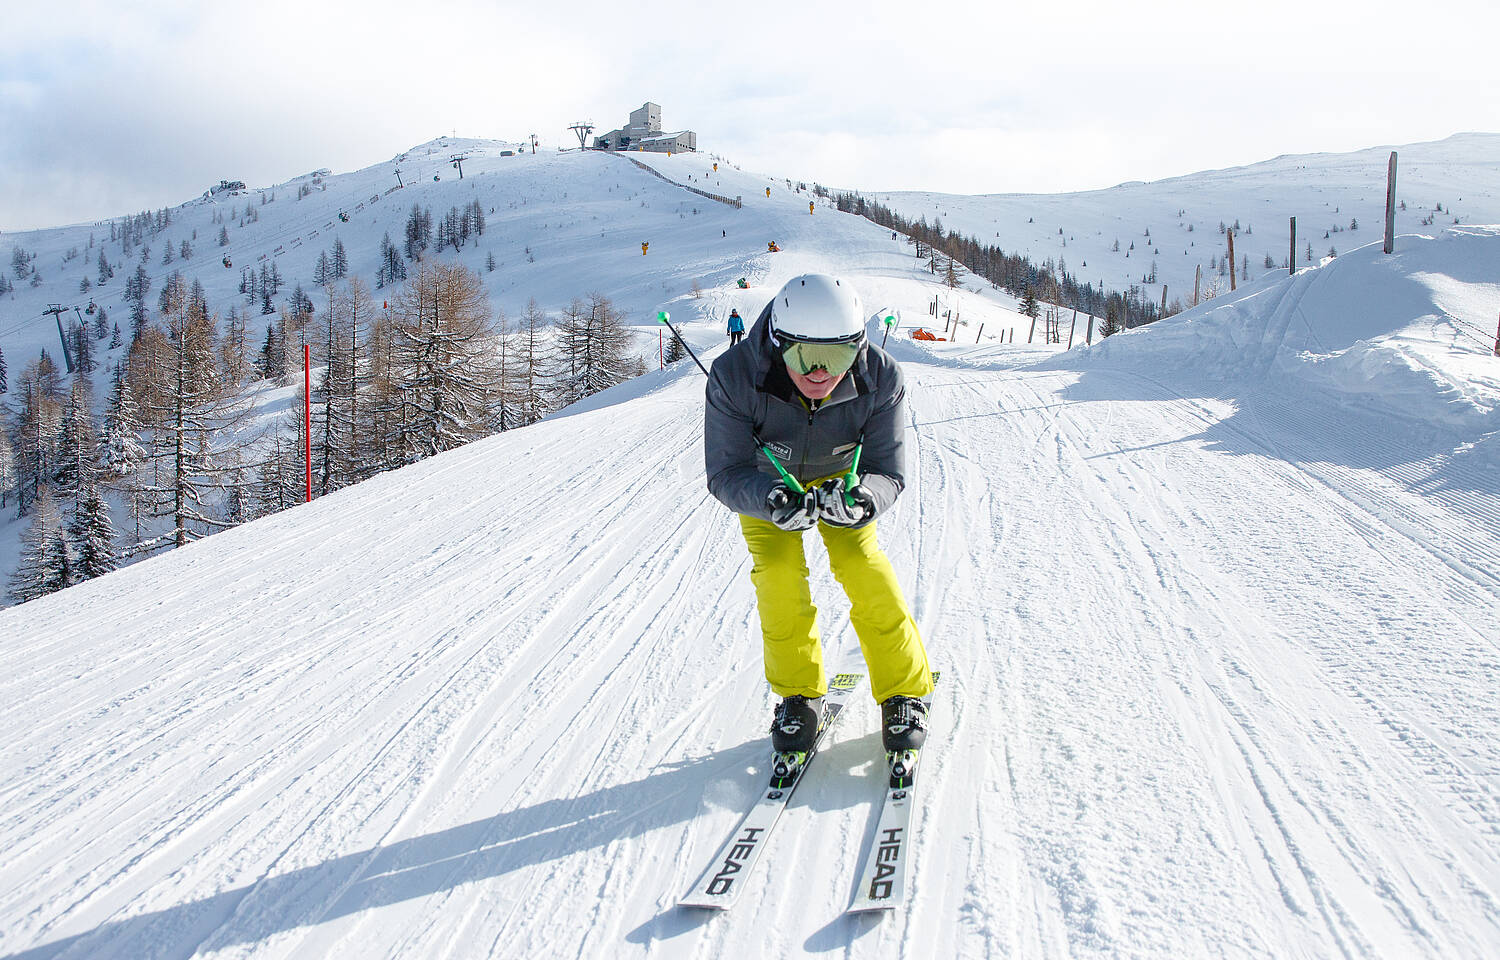 Veranstaltung Ski vor 9 mit Franz Klammer © BRM Mathias Prägant